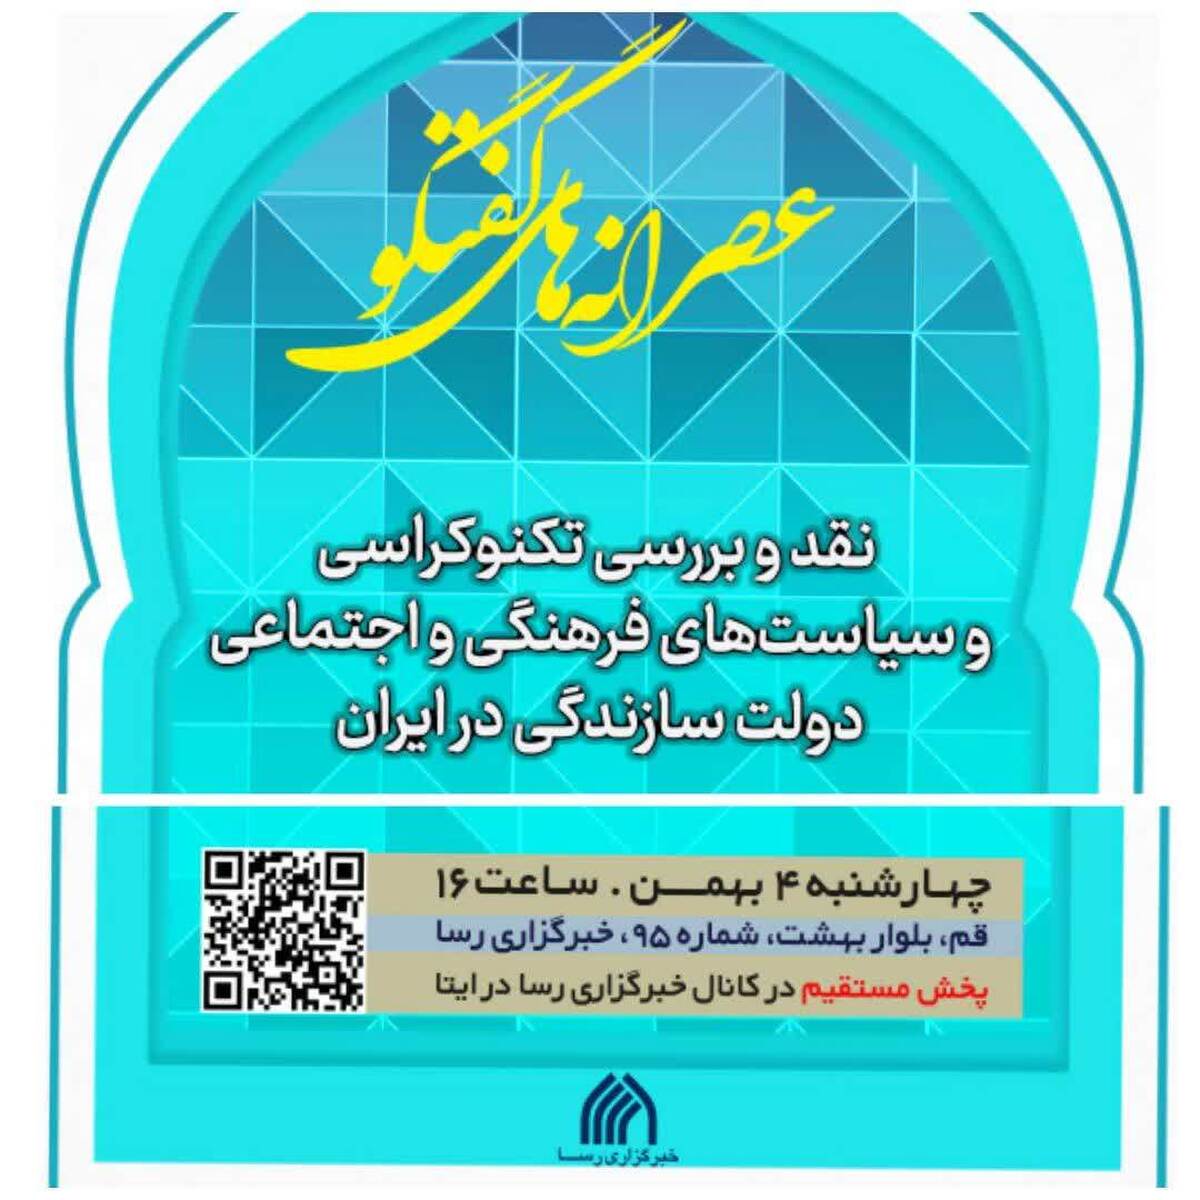 نشست «نقد و بررسی تکنوکراسی و سیاست های فرهنگی و اجتماعی دولت سازندگی در ایران»